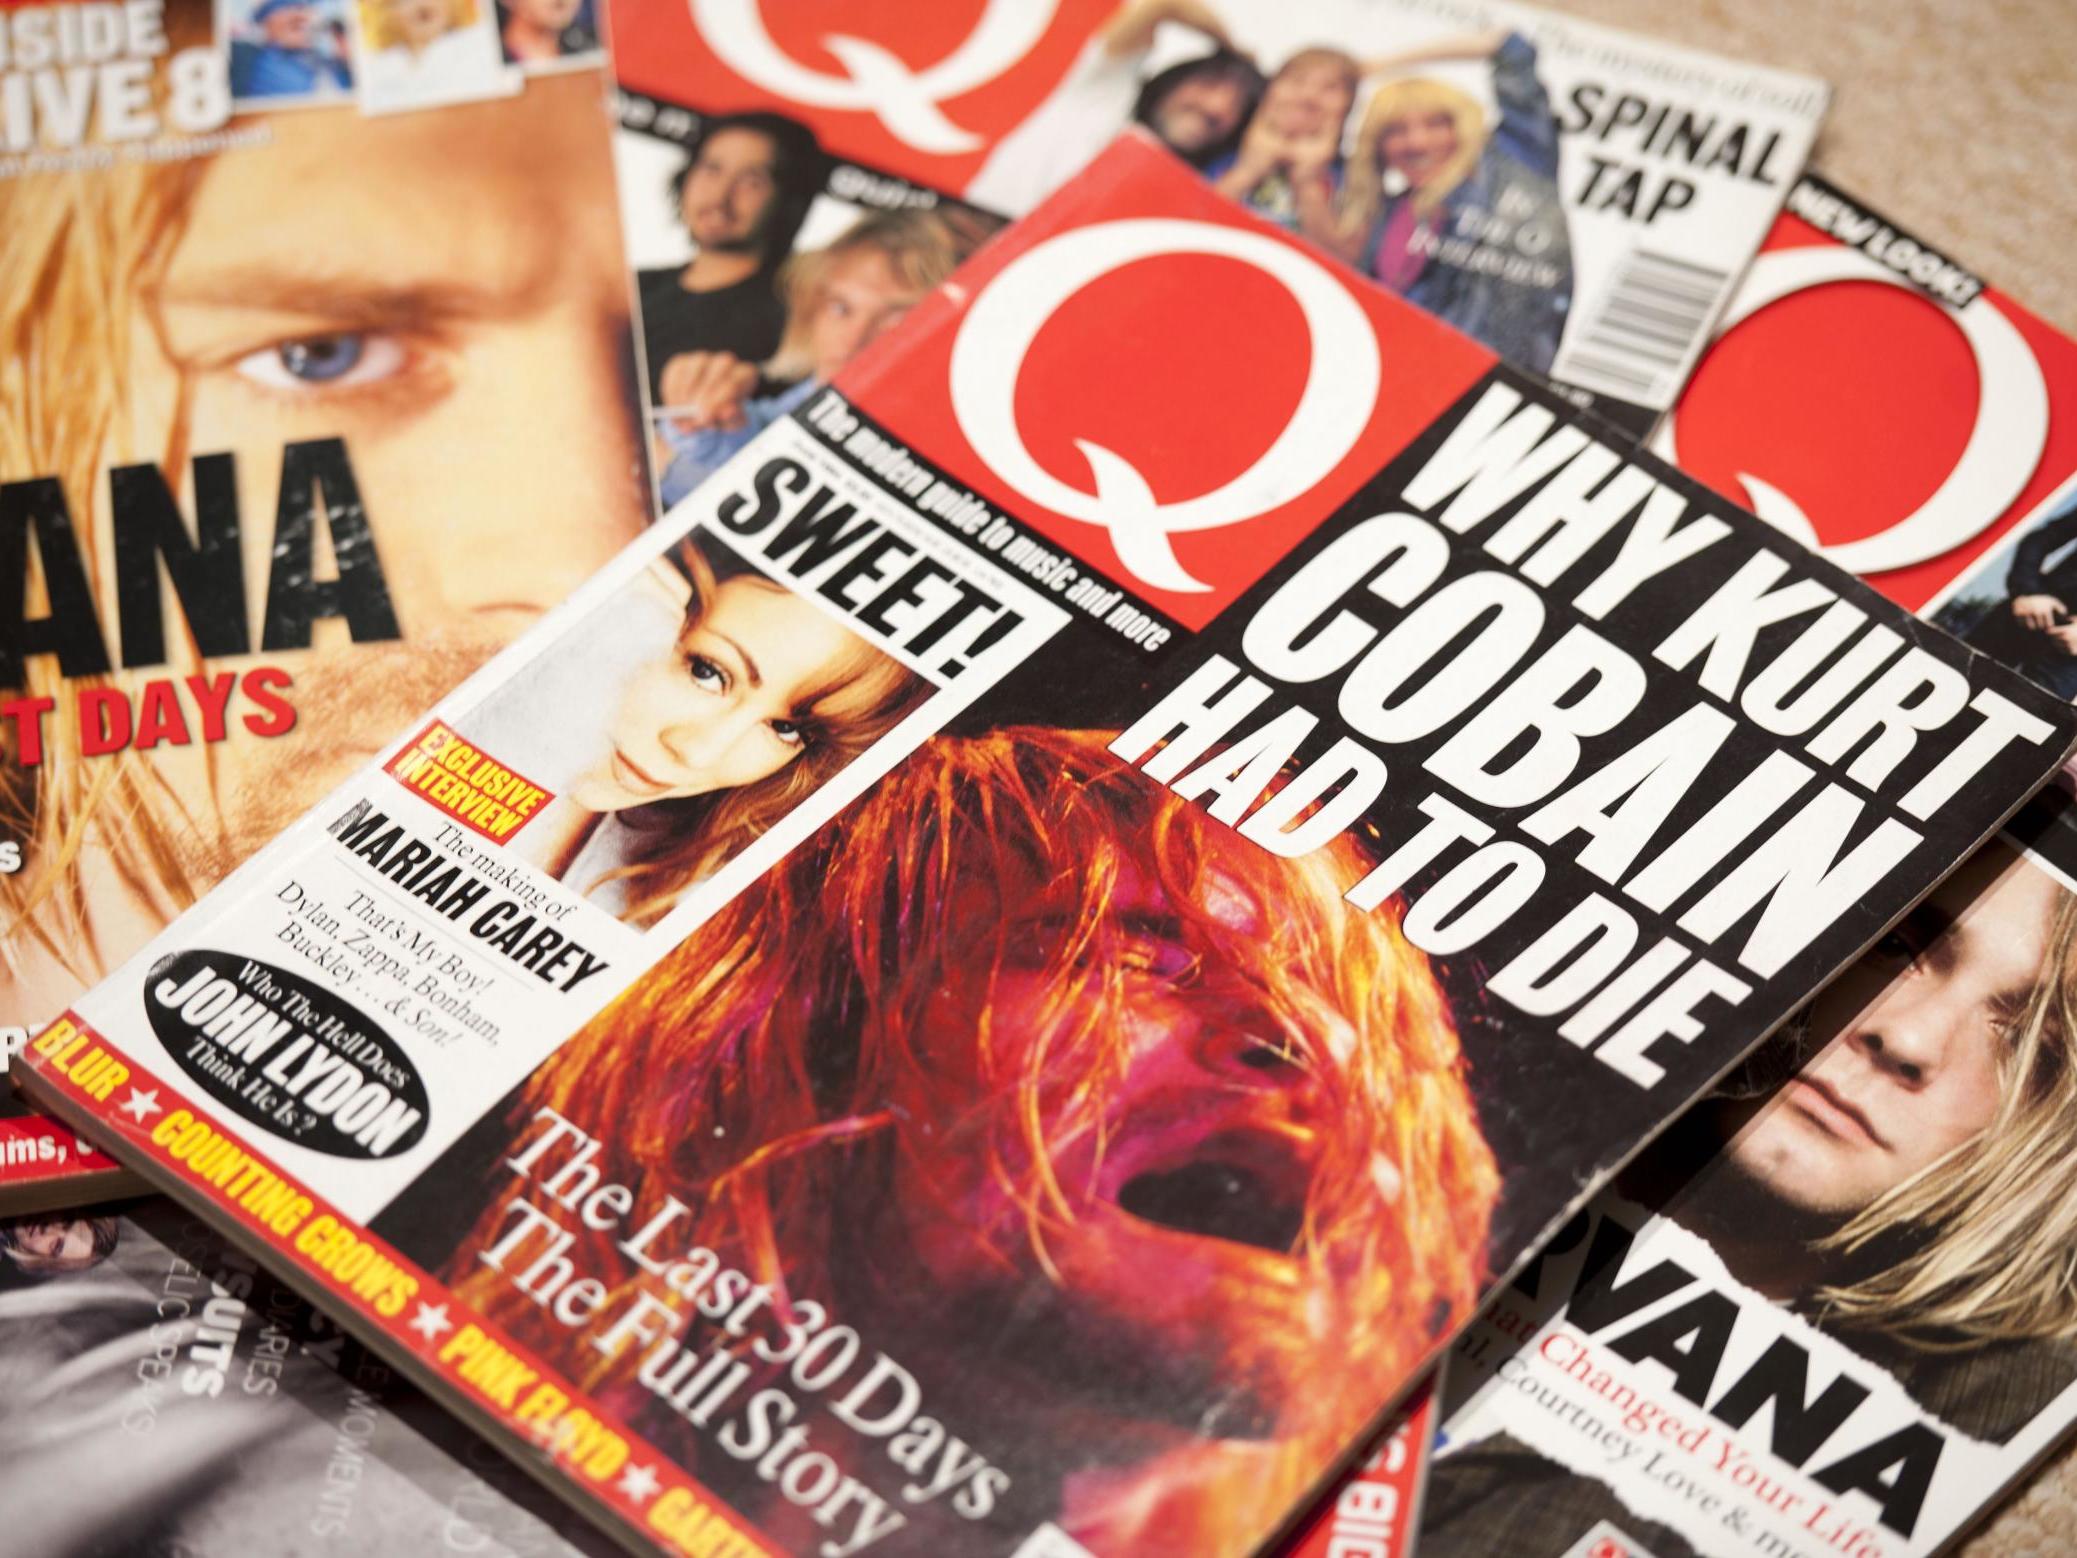 Classic Kurt Cobain covers of the influential UK music magazine Q